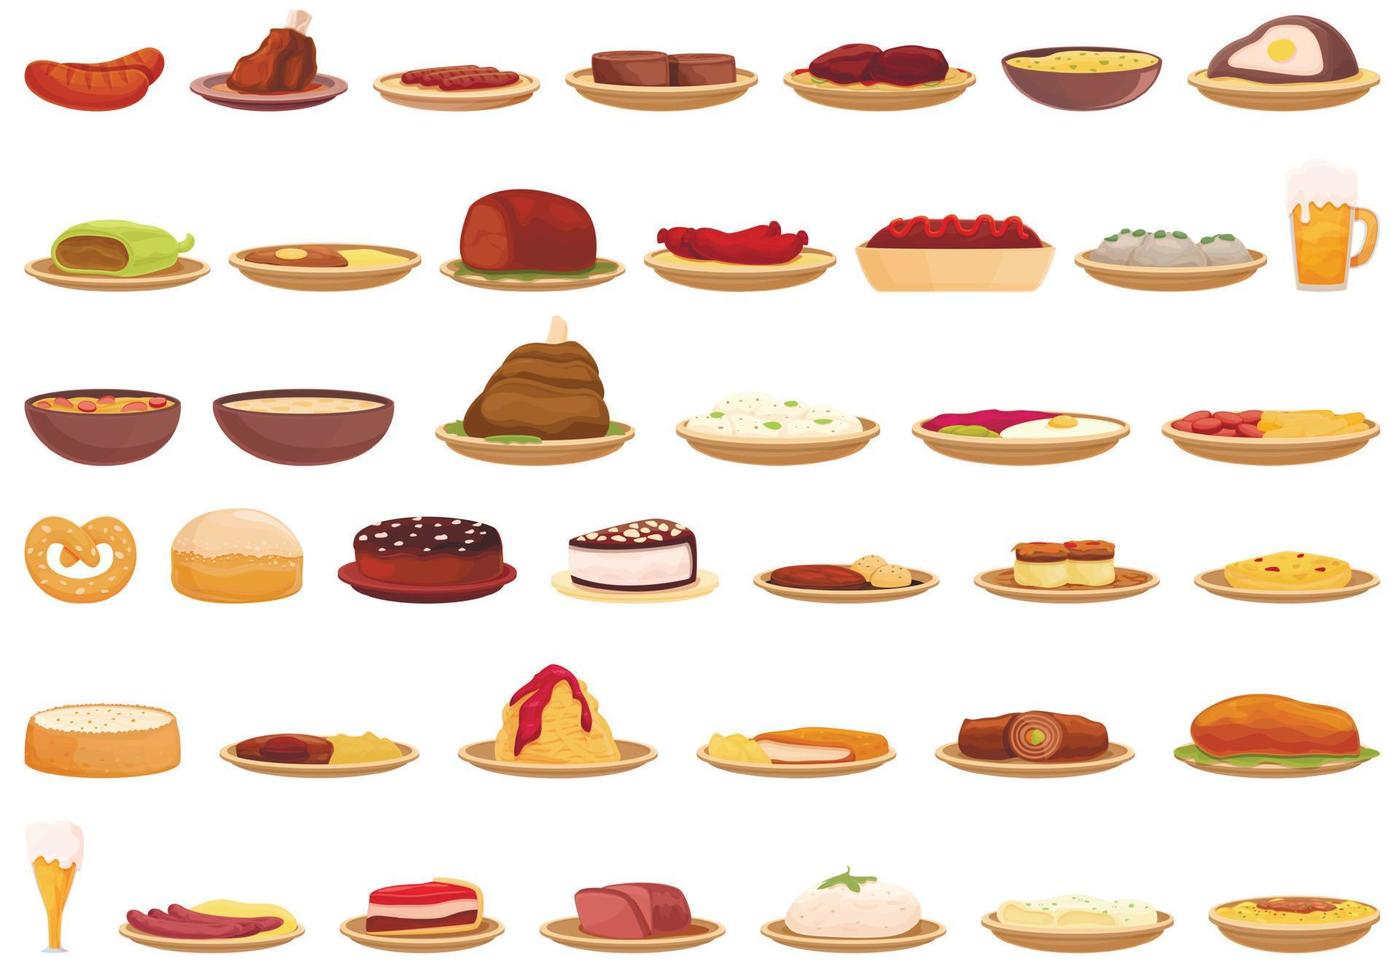 German cuisine icons set, cartoon style vector